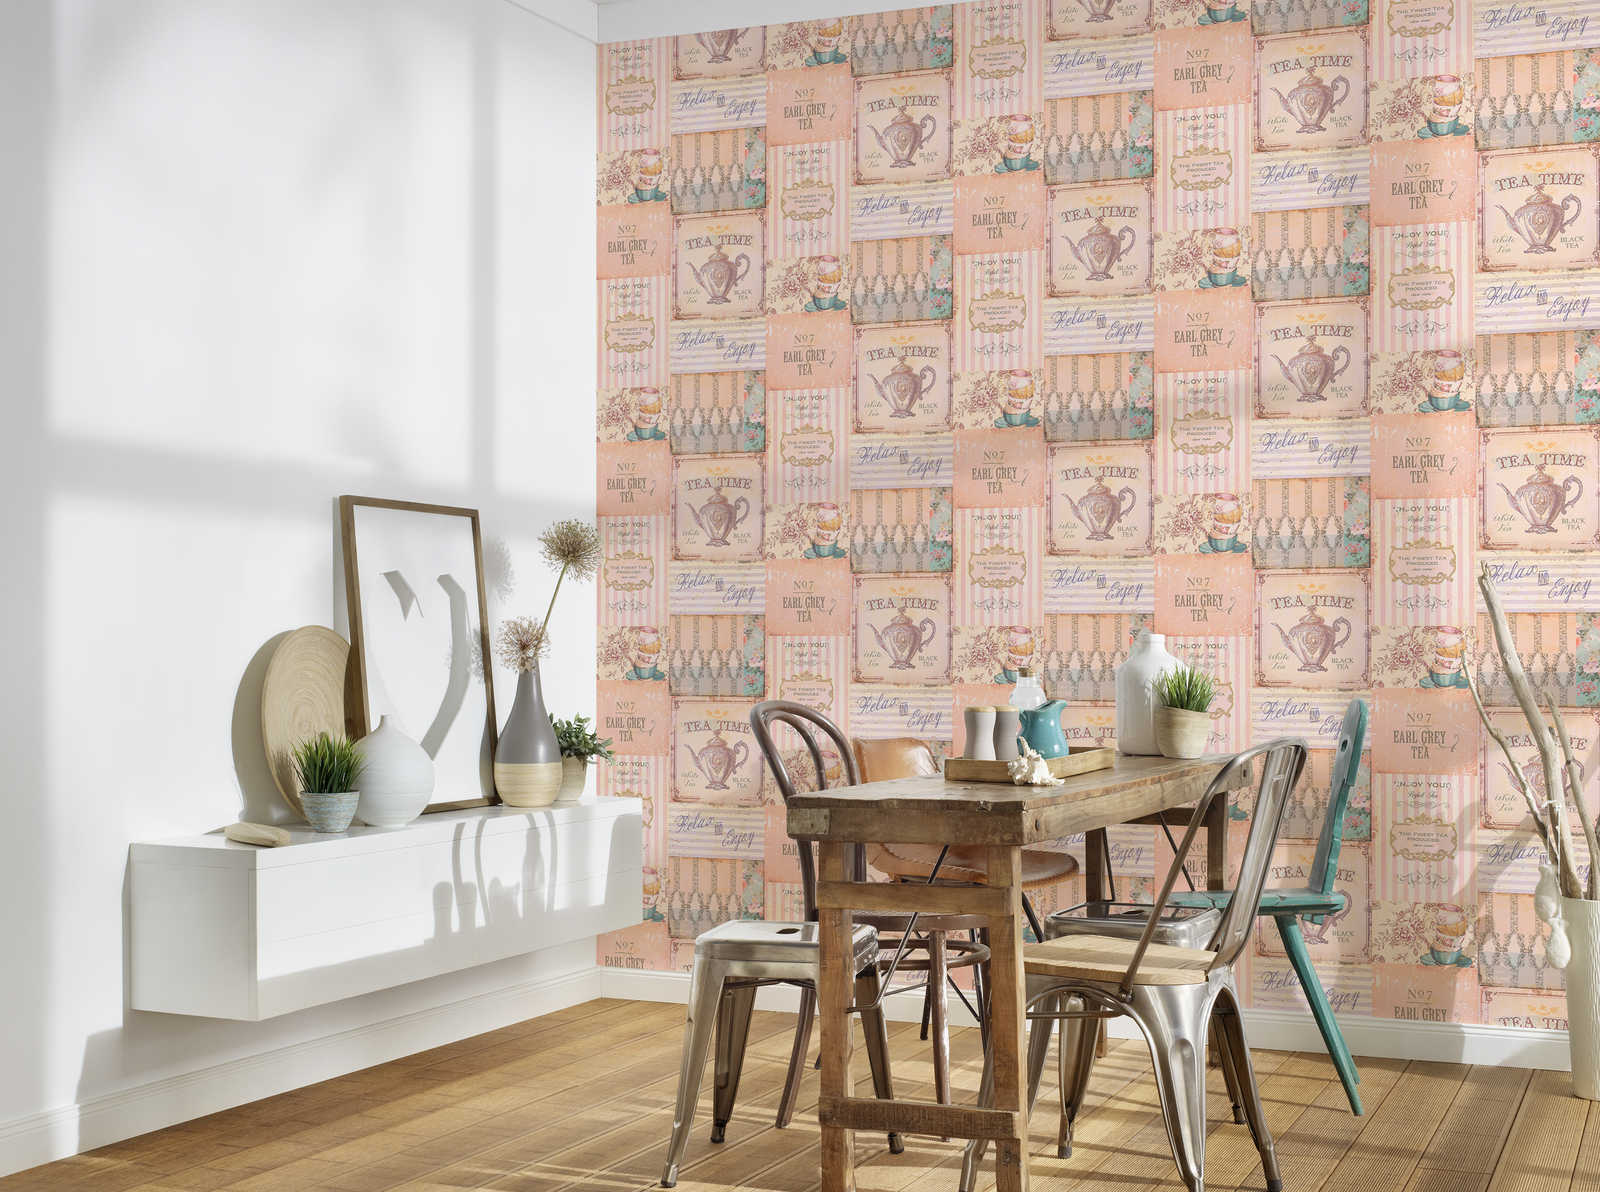             Papel pintado de cocina Collage de la hora del té en estilo campestre - rosa, gris, azul
        